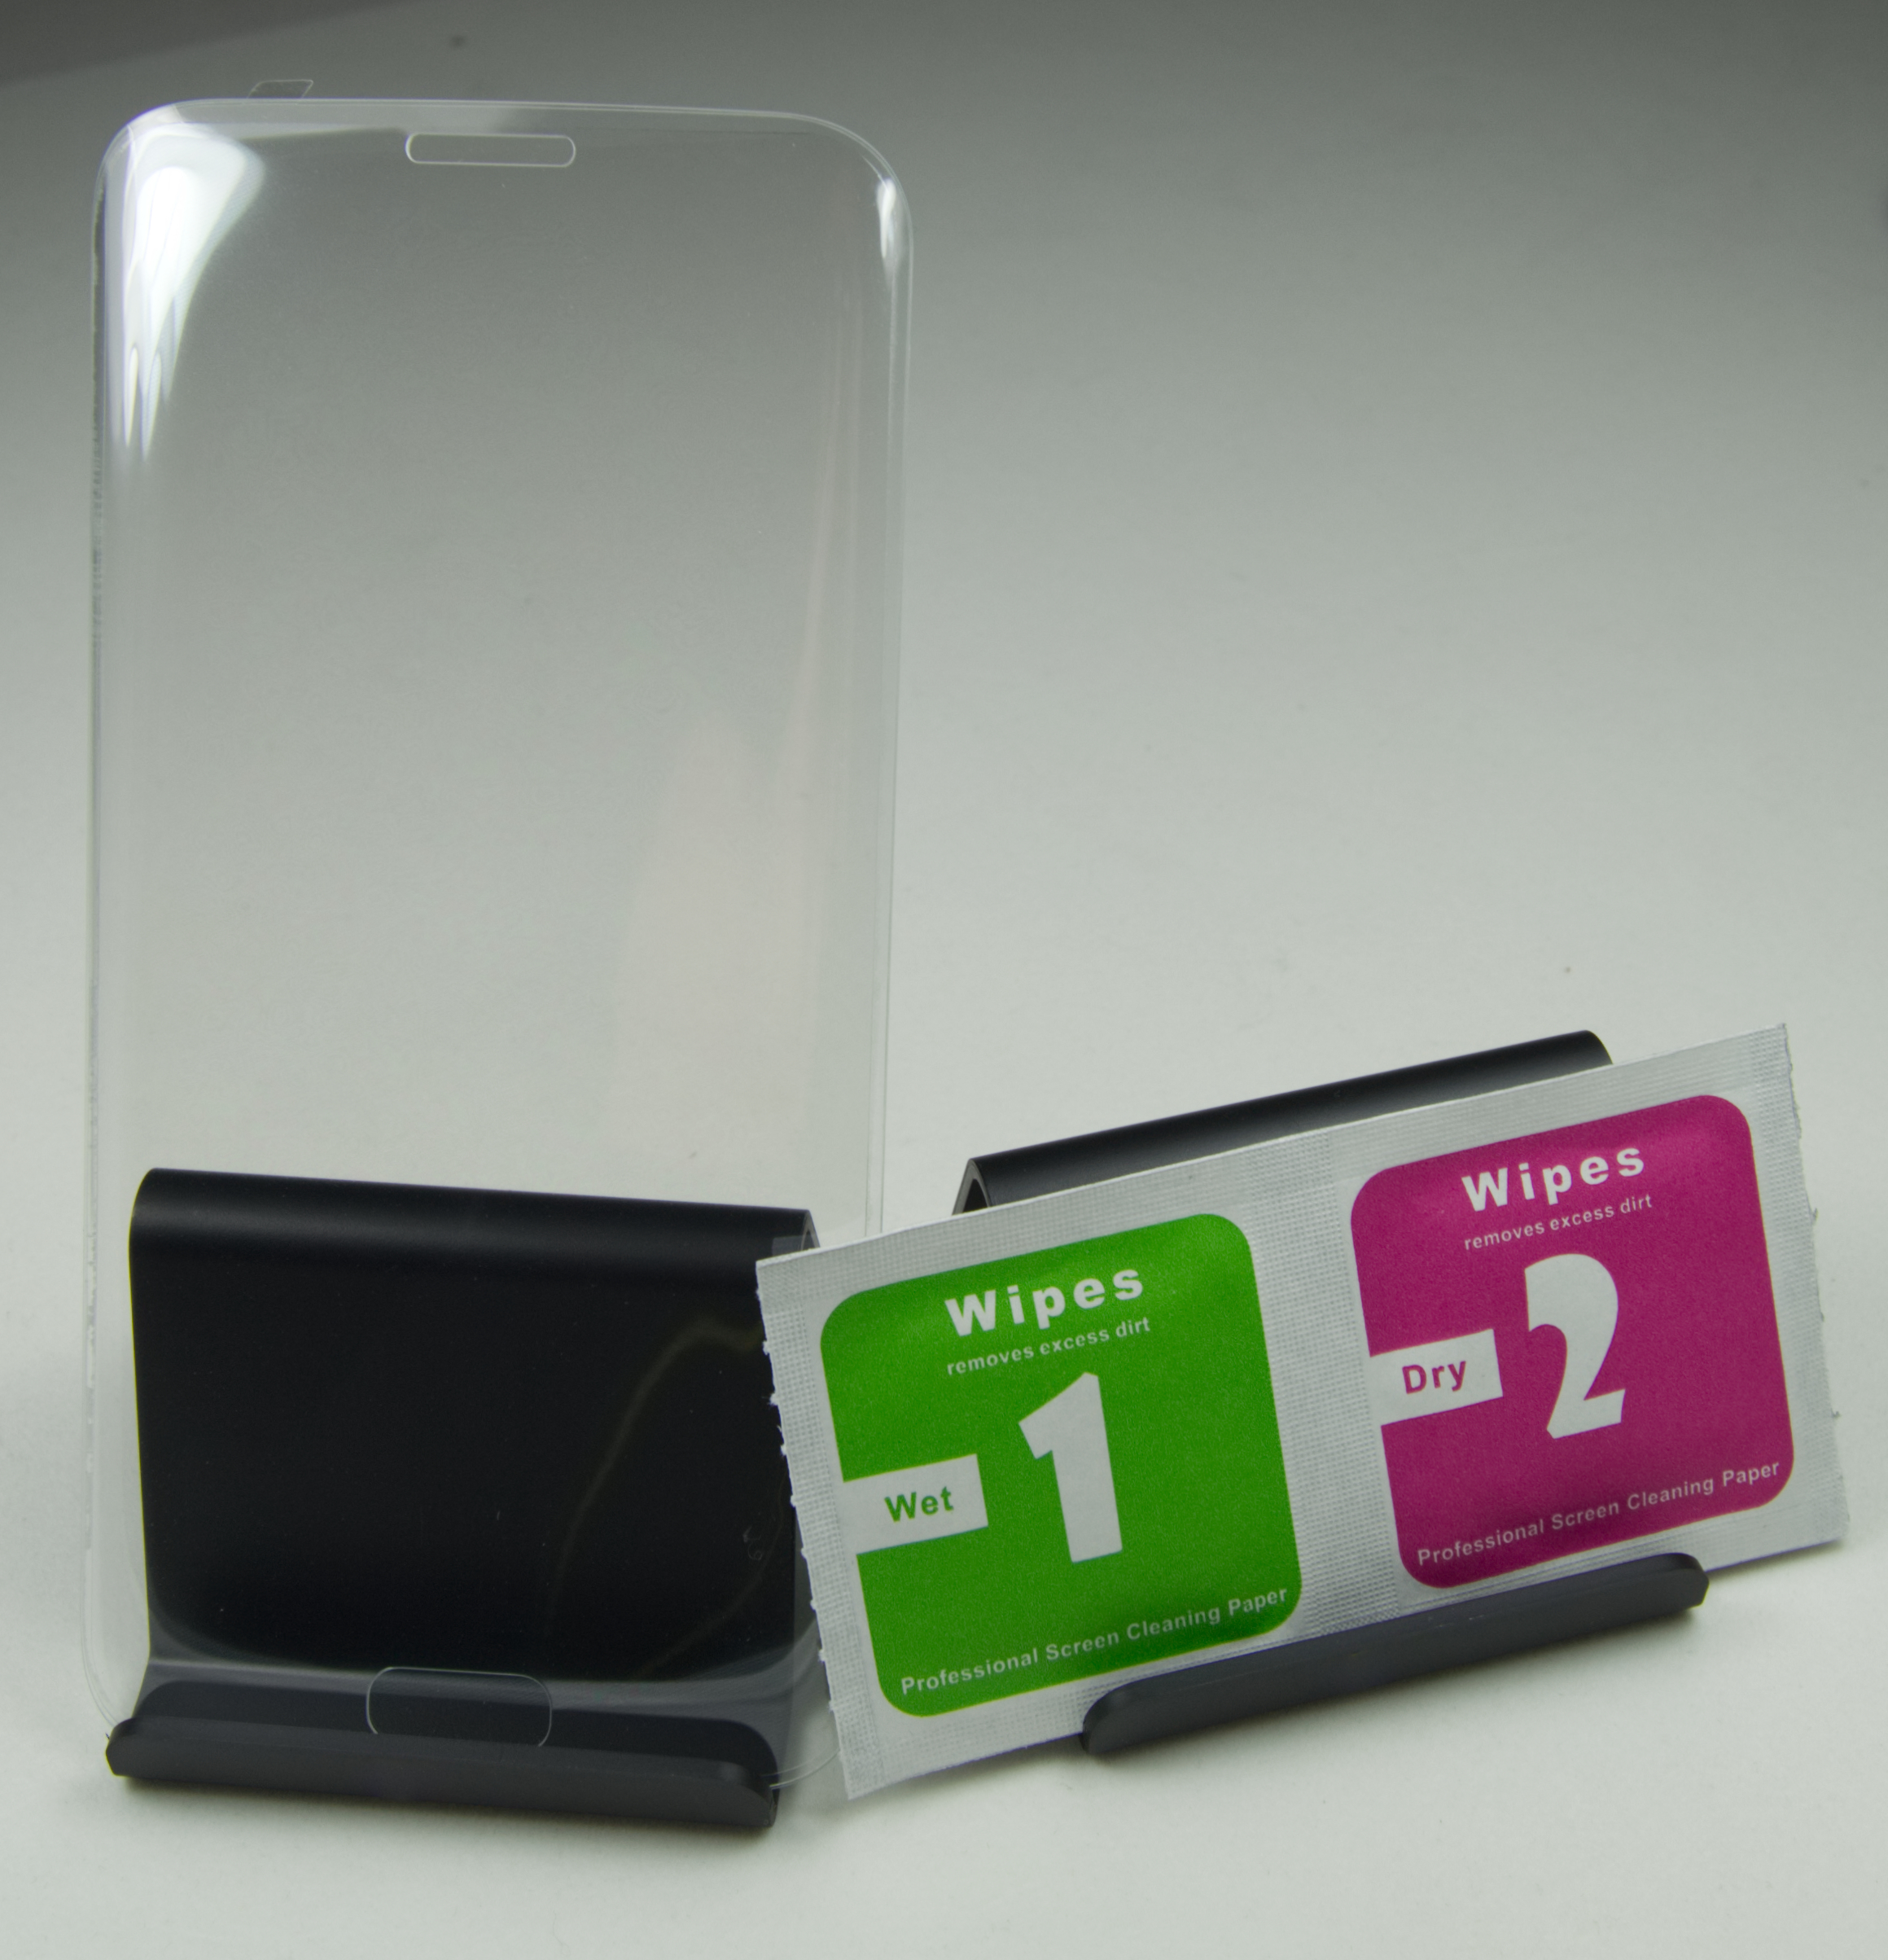 GoConn 9H 3D Handy Schutzglas Displayschutz für Samung Galaxy S7